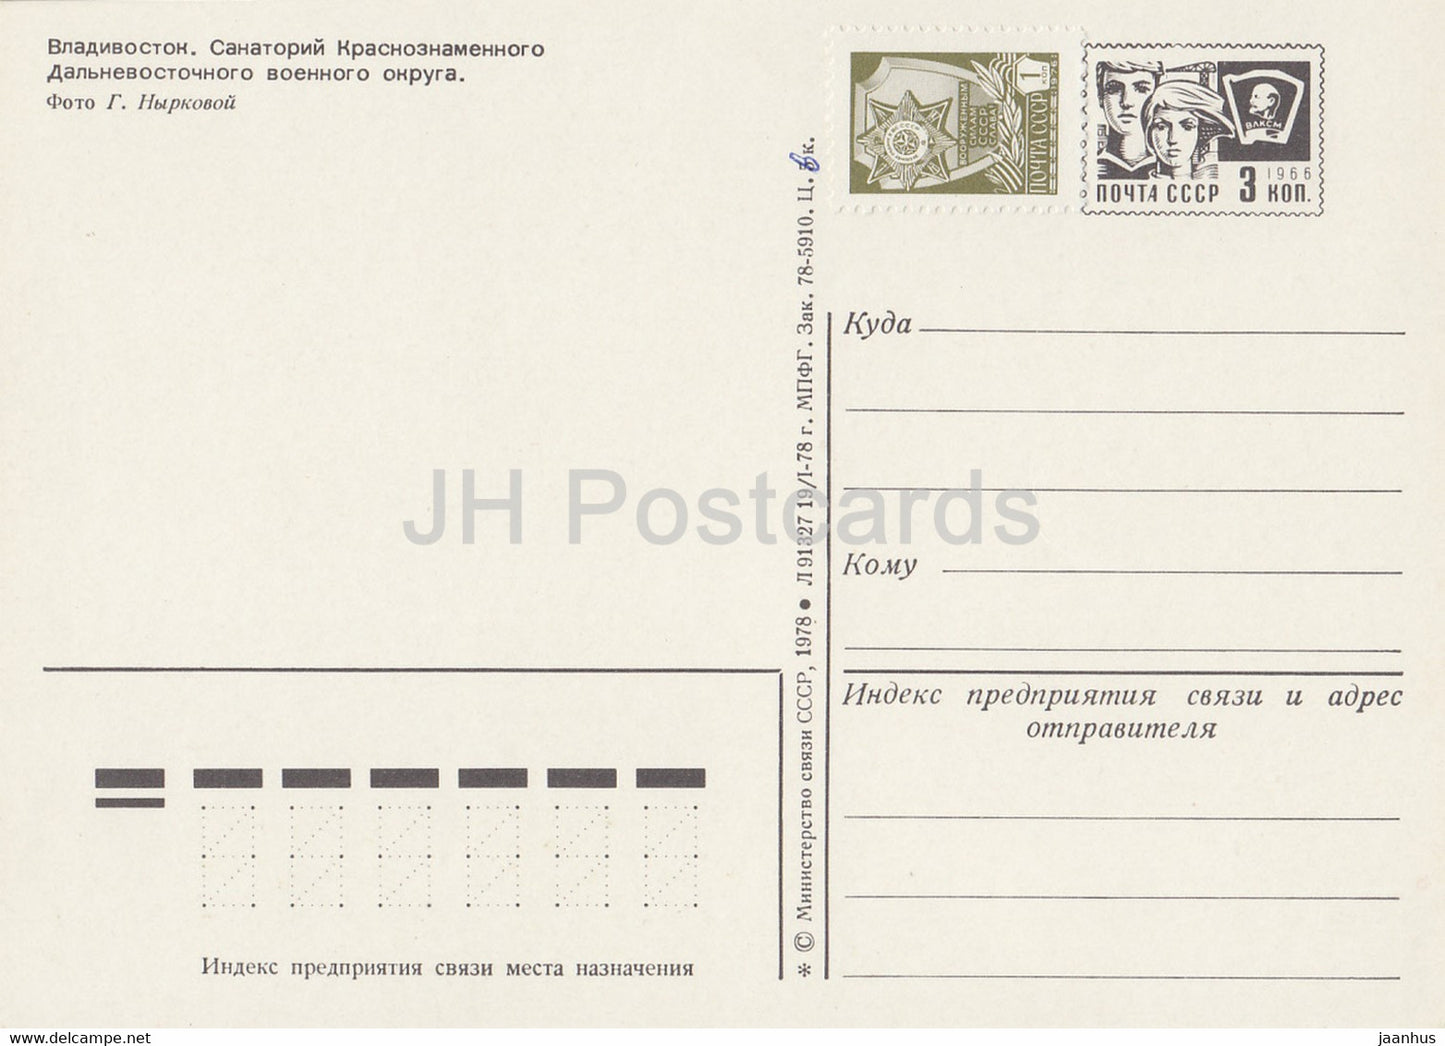 Vladivostok - sanatorium du district militaire d'Extrême-Orient - 1 - entier postal - 1978 - Russie URSS - inutilisé